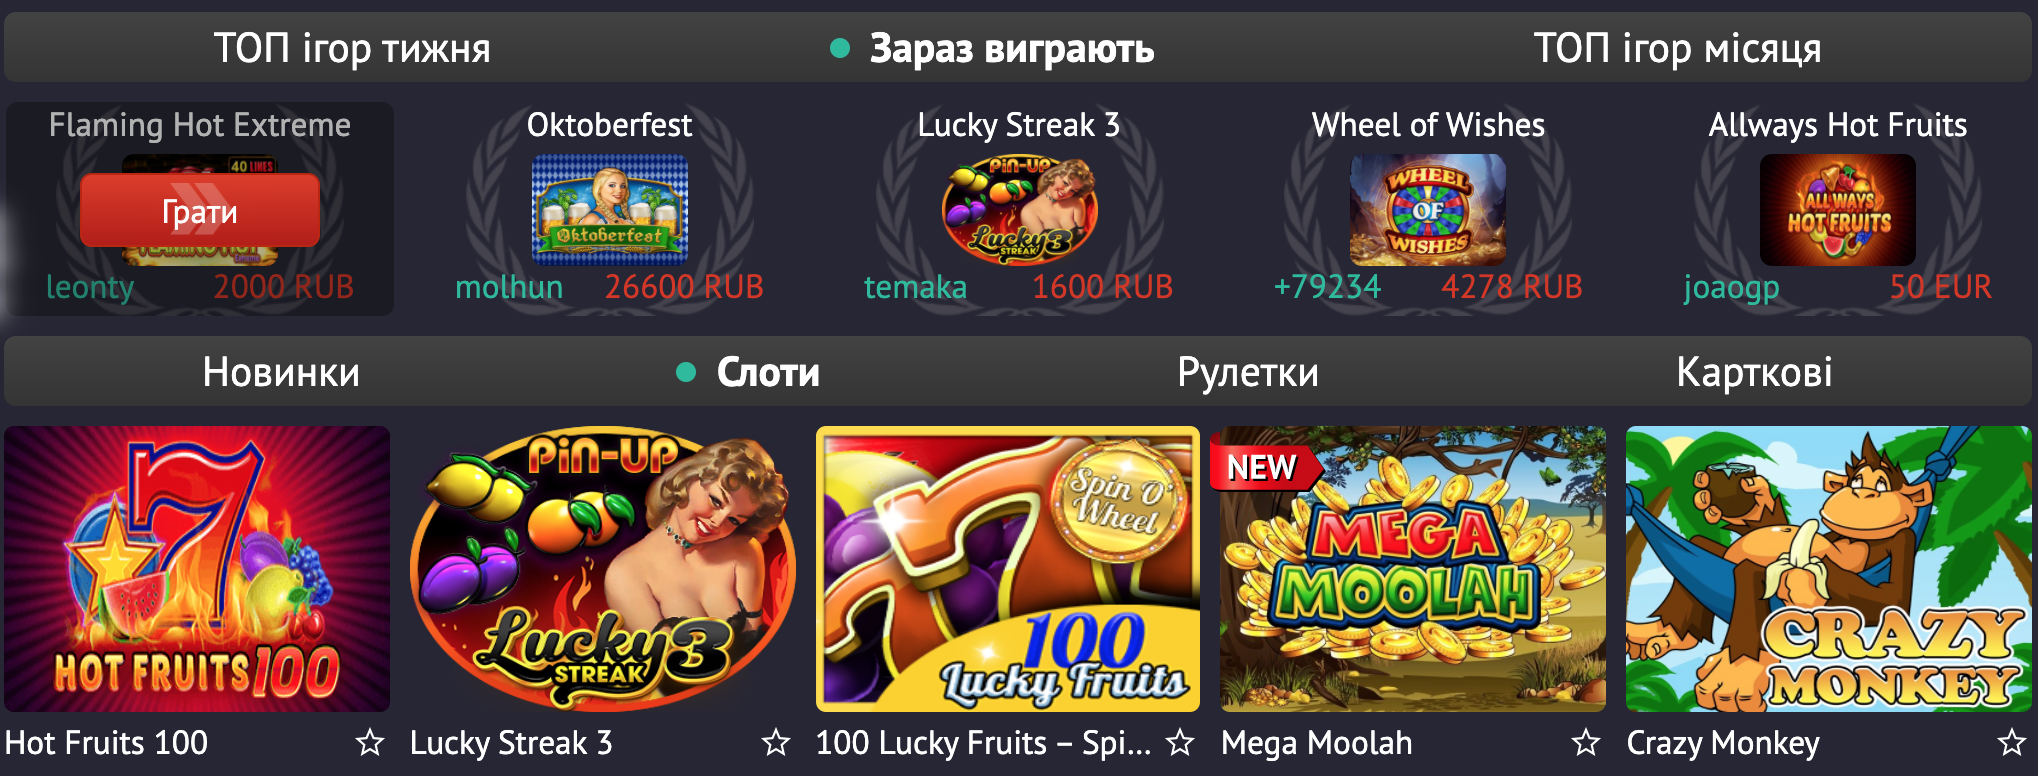 сайт русское казино